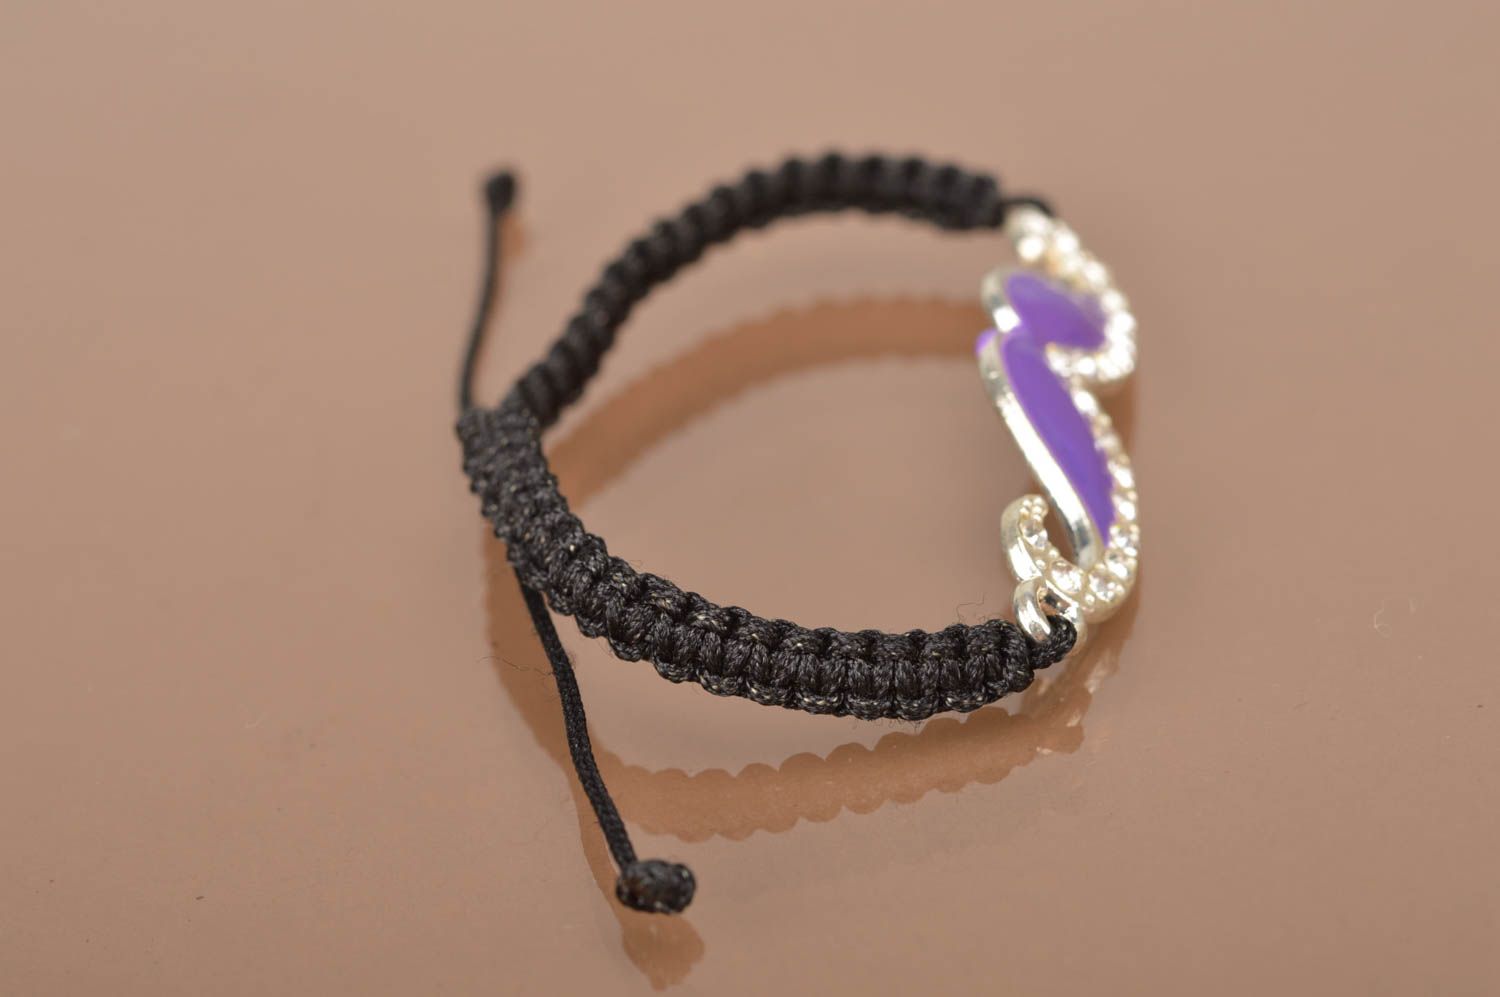 Bright handmade braided wrist bracelet stylish friendship bracelet jewelry ideas photo 4